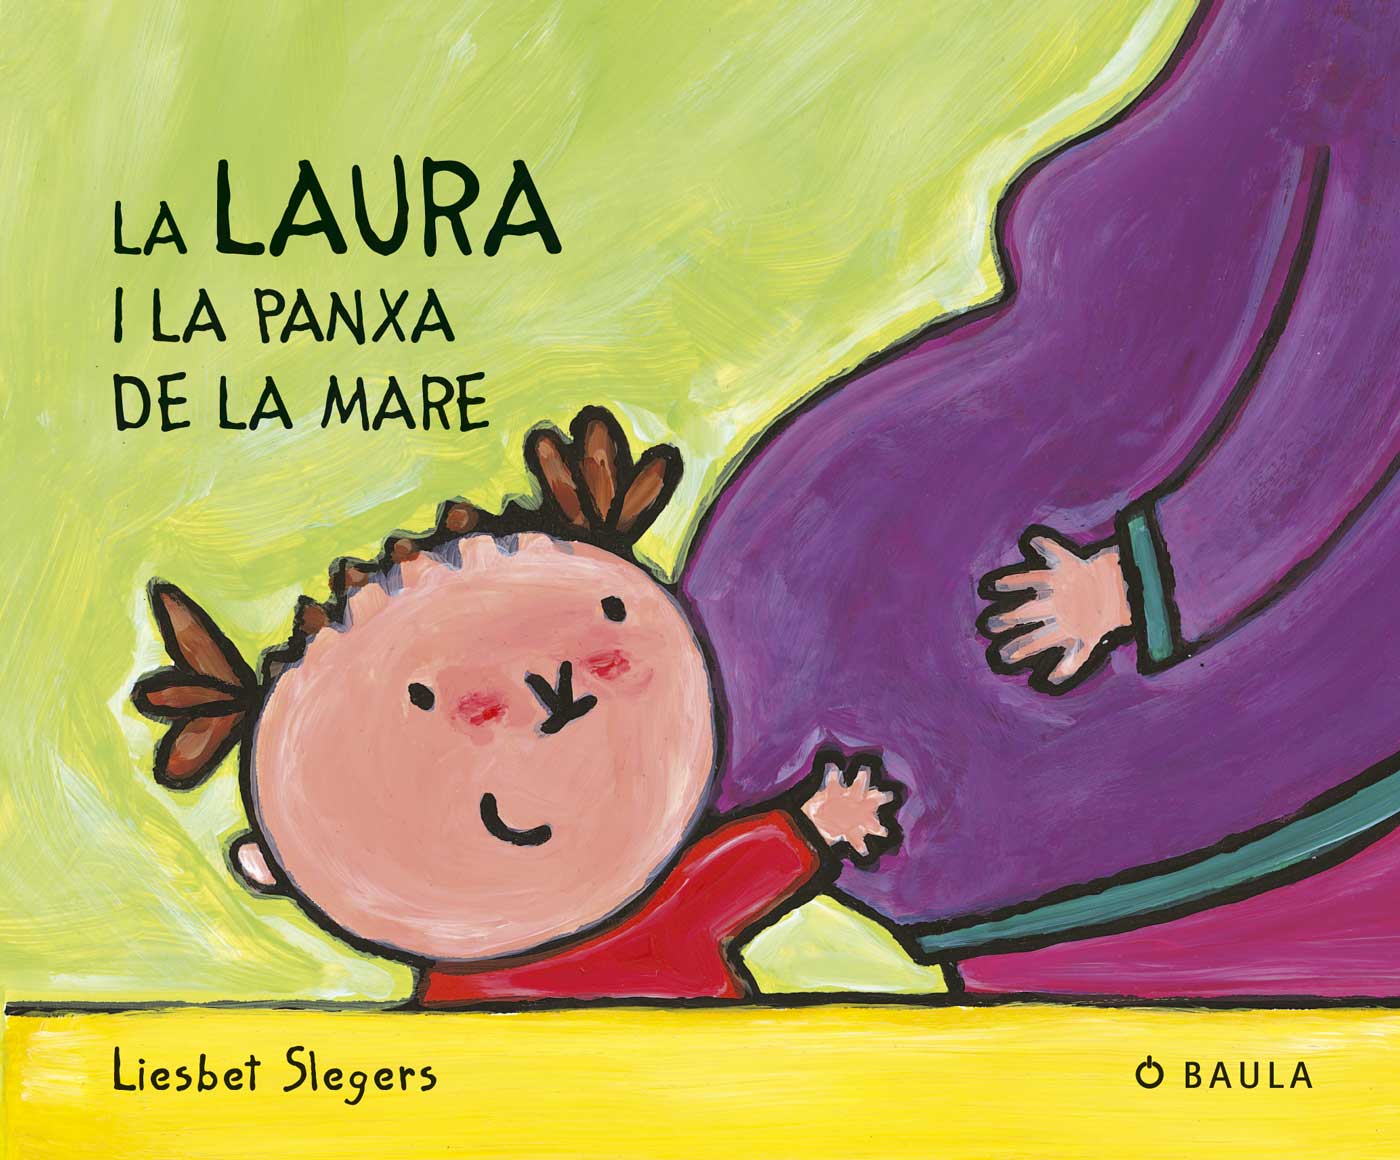  La Laura i la panxa de la mare 